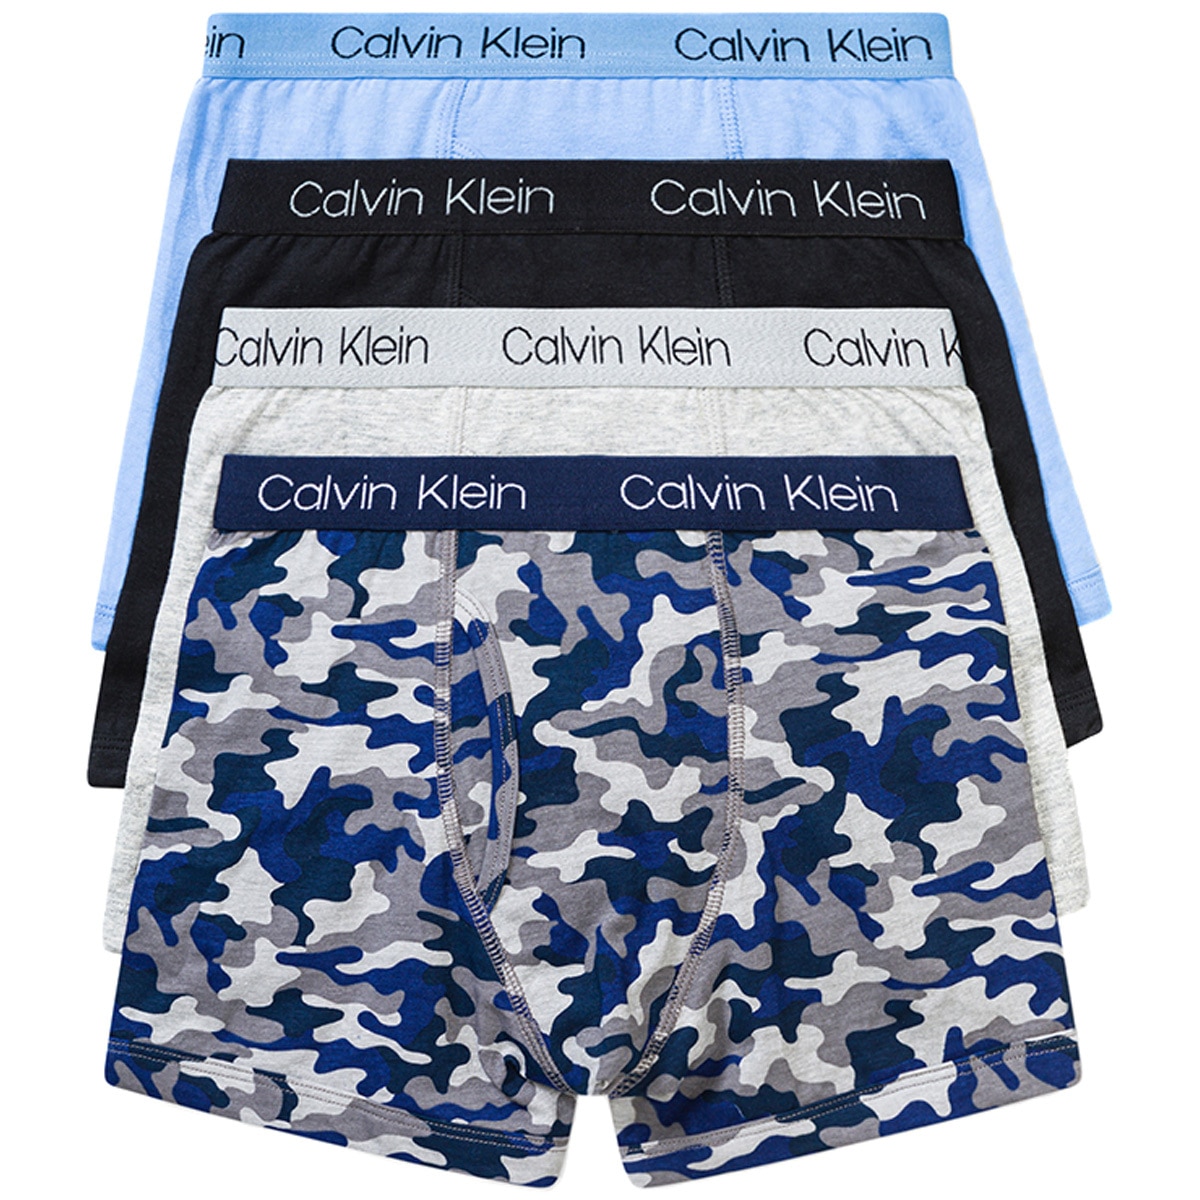 Boys Underwear, Boys Calvin Klein Boxers & Briefs